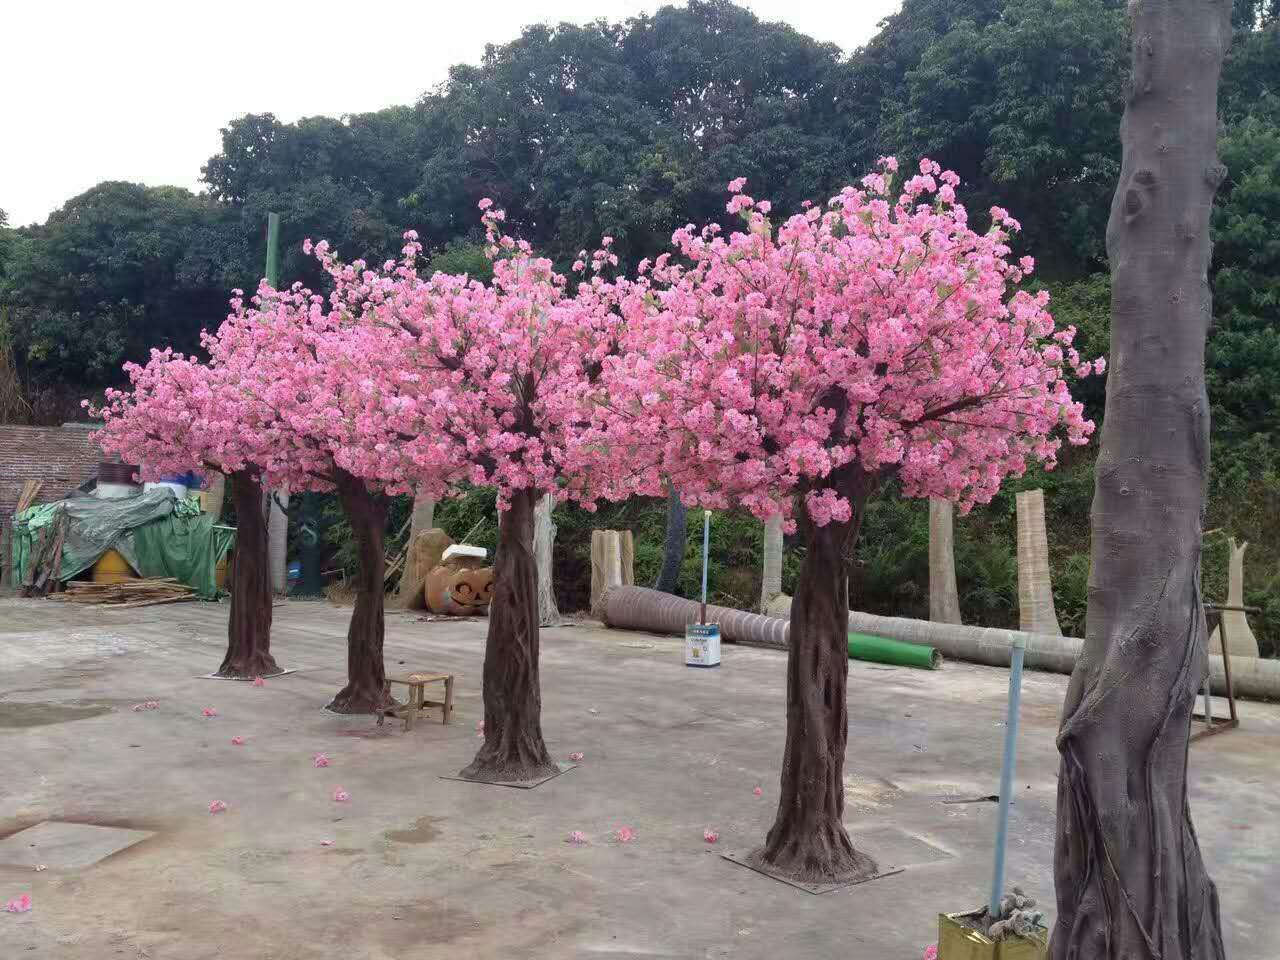 厂家直销仿真樱花树假桃树大型植物园林景观许愿树桃花客厅装饰 - 一花一室界